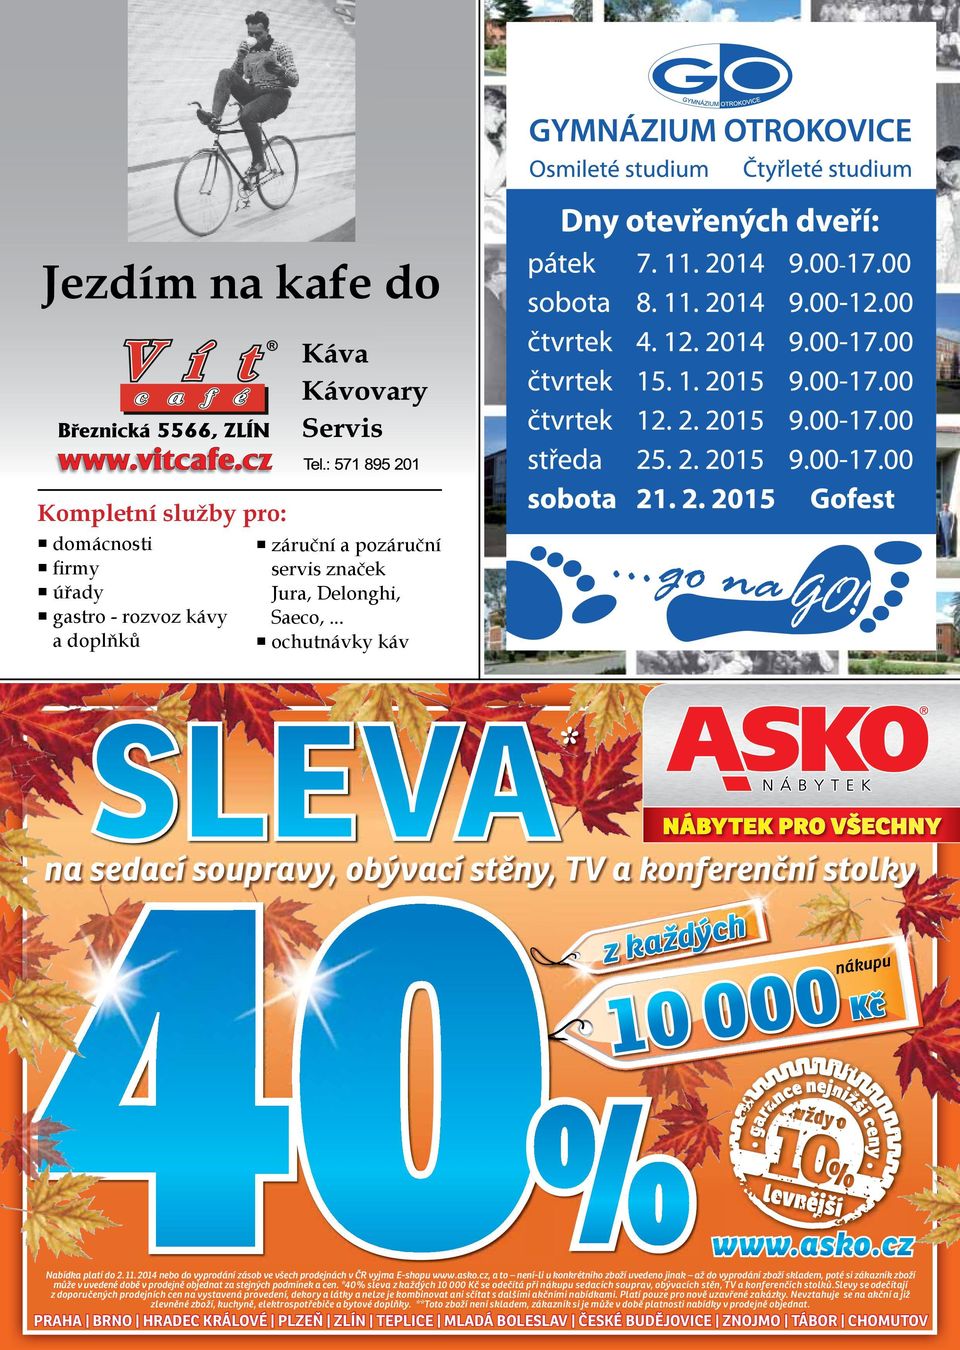 2014 nebo do vyprodání zásob ve všech prodejnách v ČR vyjma E-shopu www.asko.